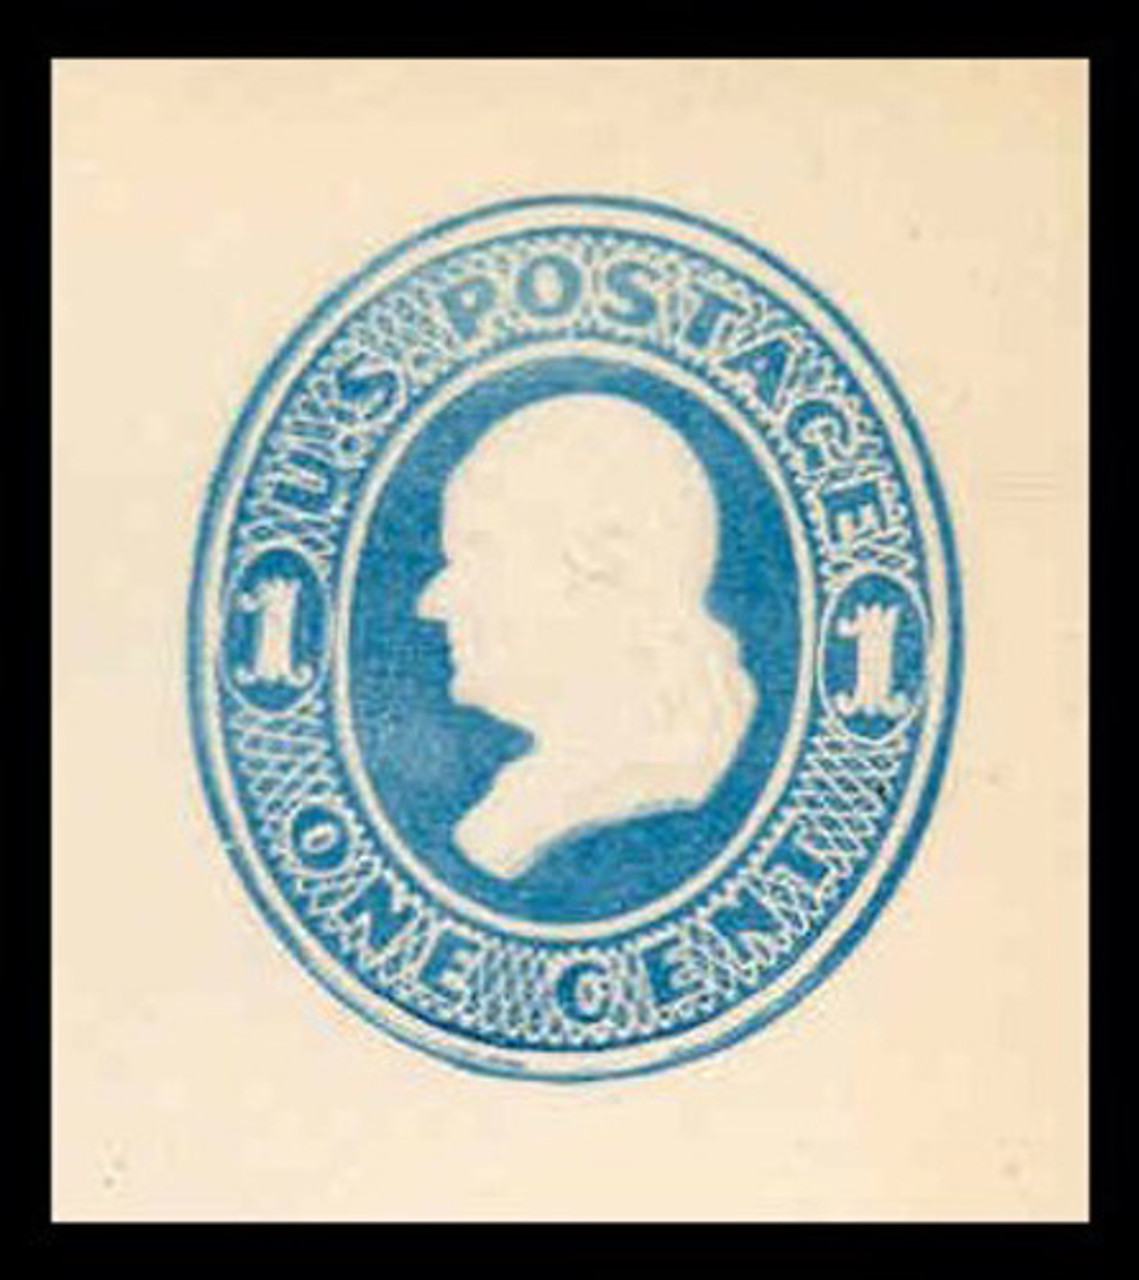 USA Scott # U 113, 1874-86 1c Franklin, Scott Die U35, light blue on white - Mint Cut Square